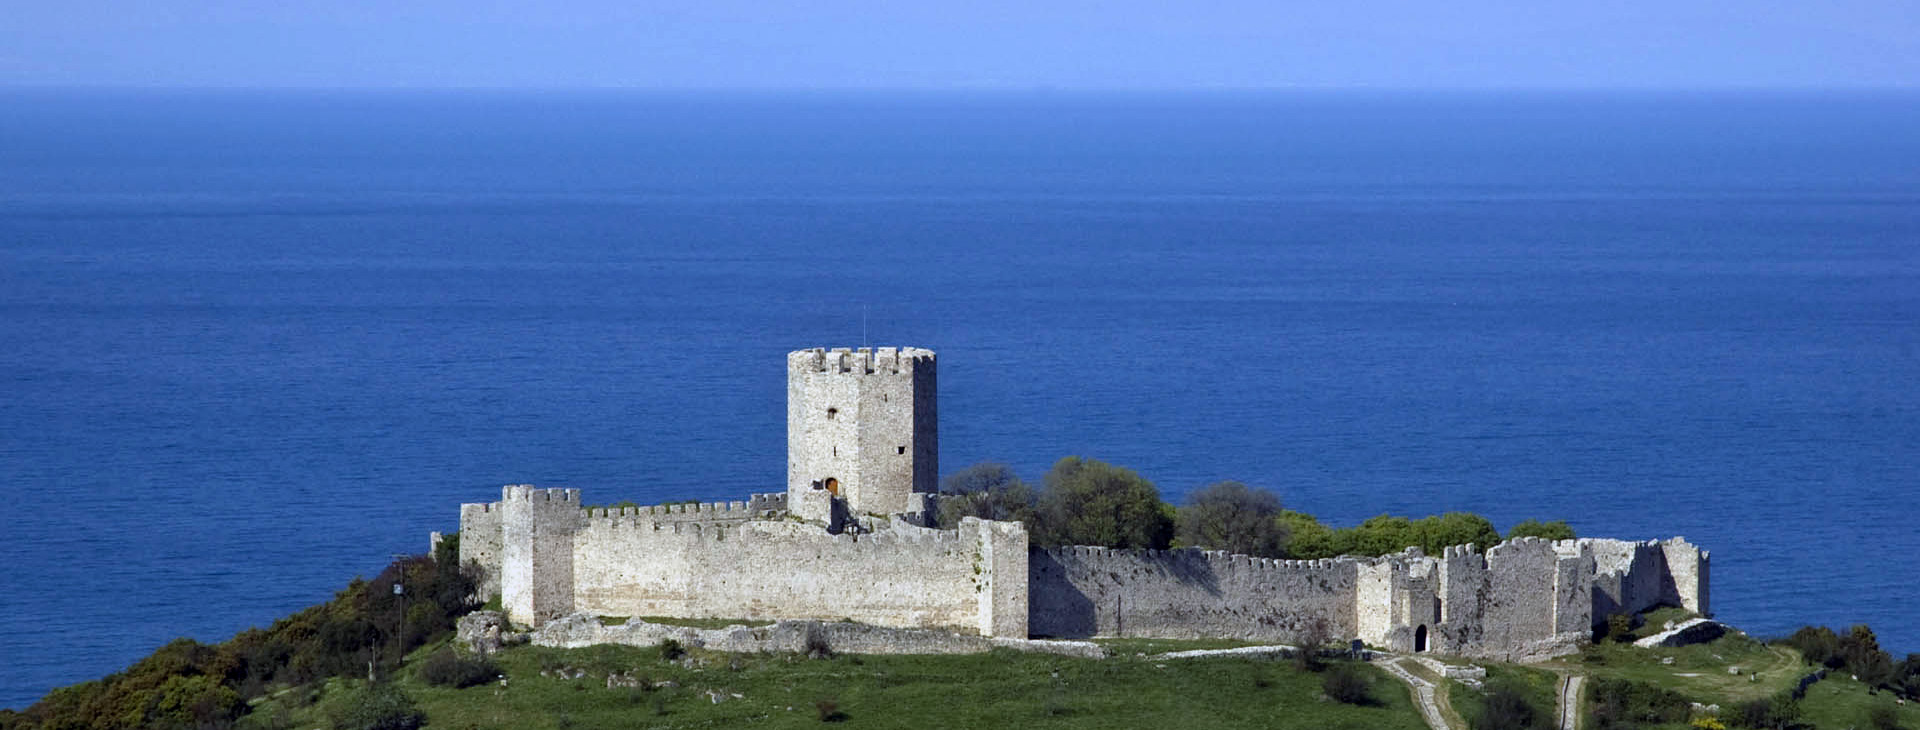 The castle of Platamonas, Pieria